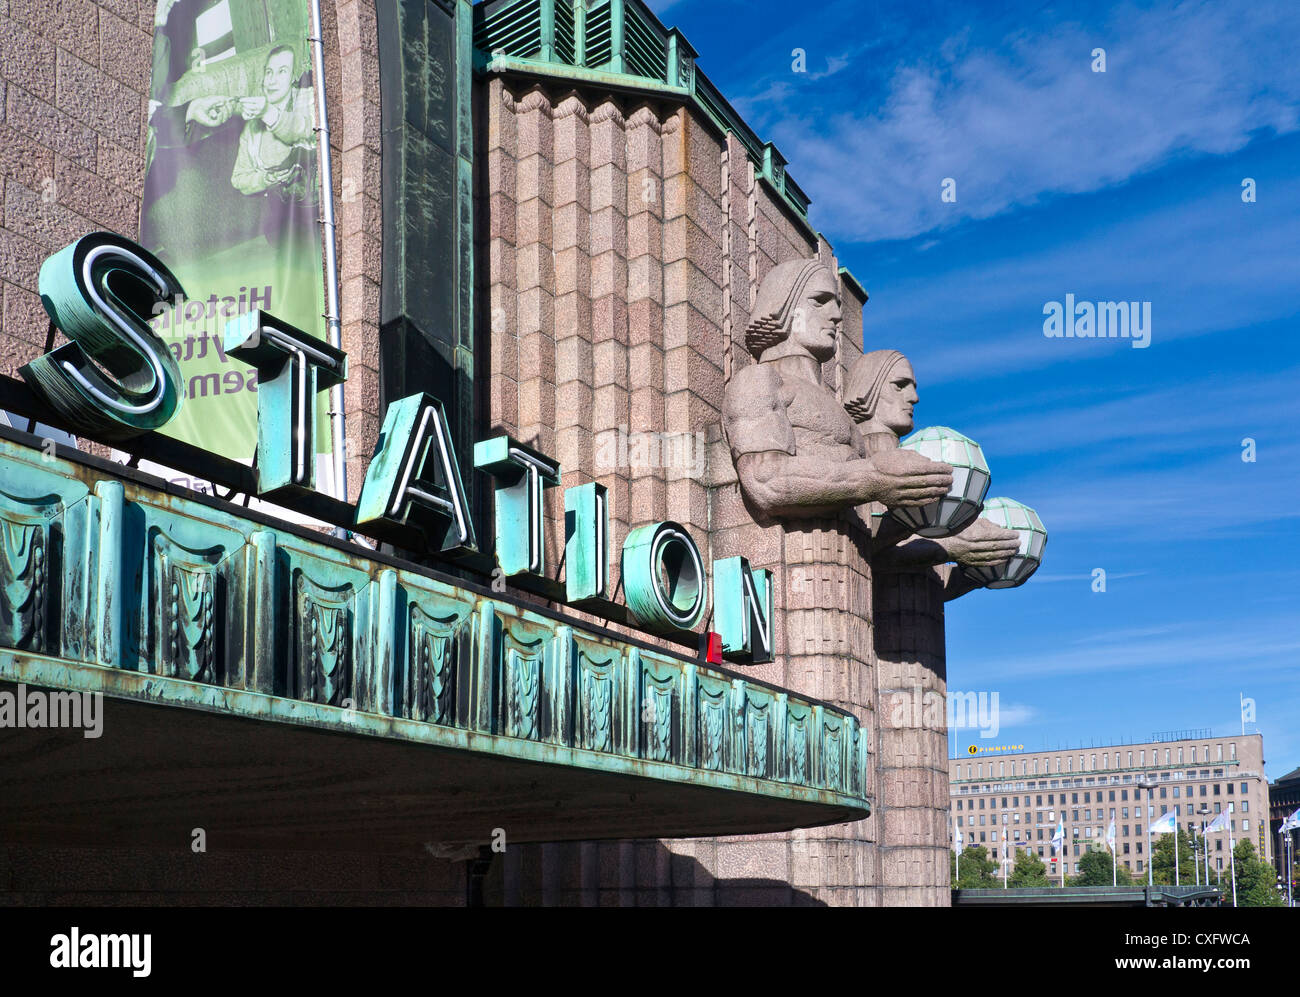 Alta vista del exterior de la estación central de ferrocarril de Helsinki con monumento neoclásico figuras de piedra sosteniendo lámparas Finlandia Helsinki Foto de stock